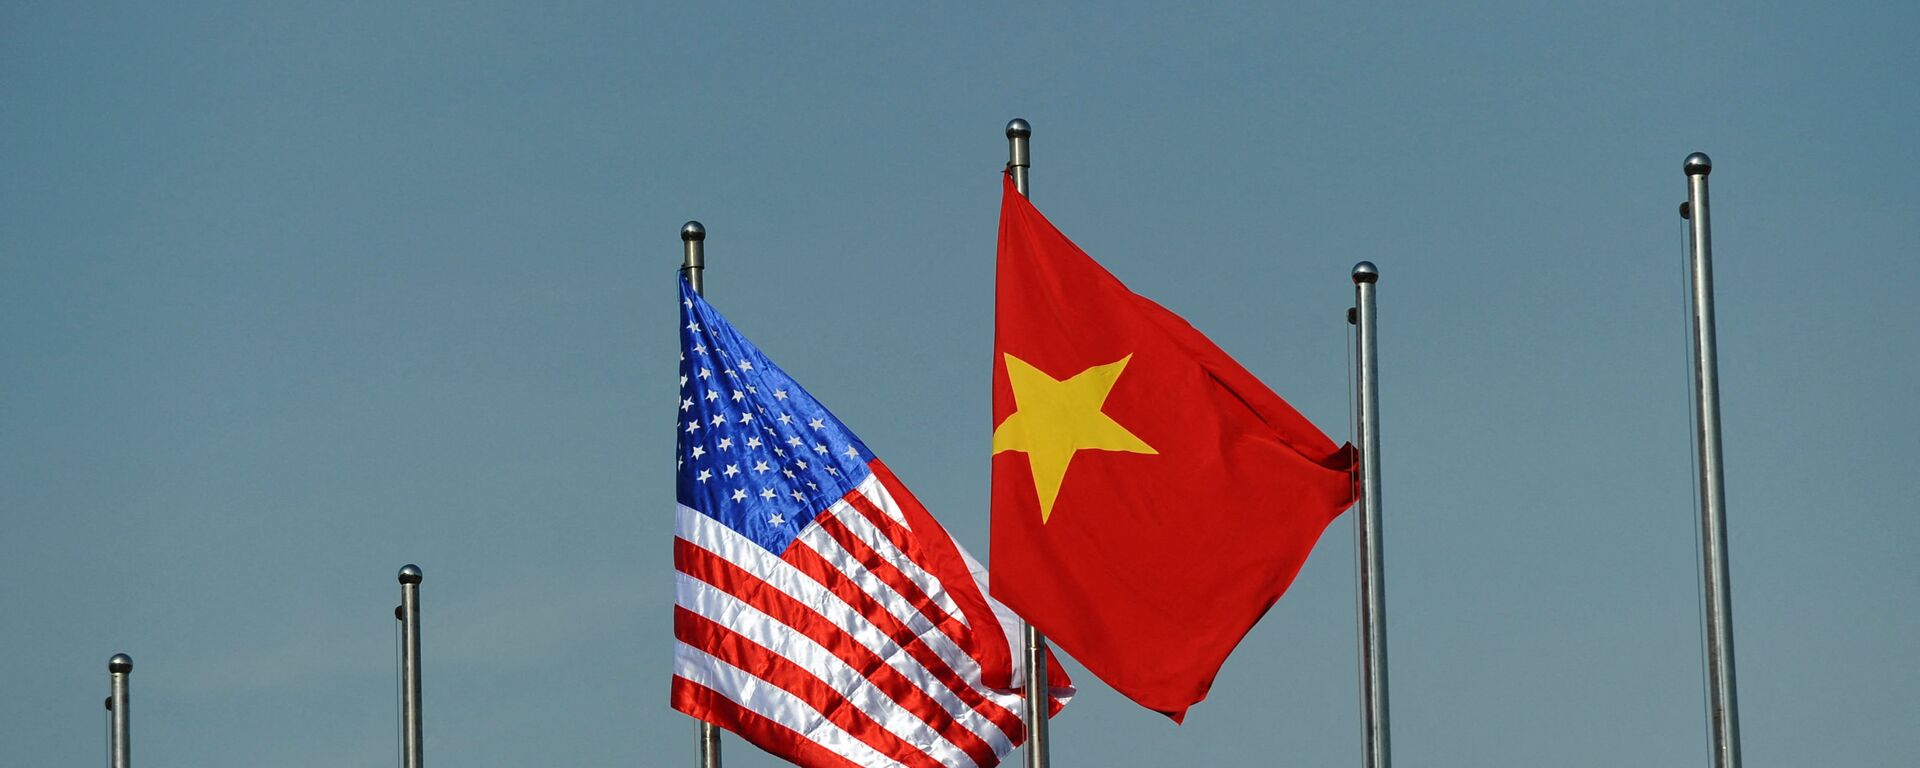 Quốc kỳ của Hoa Kỳ và Việt Nam. - Sputnik Việt Nam, 1920, 11.09.2021